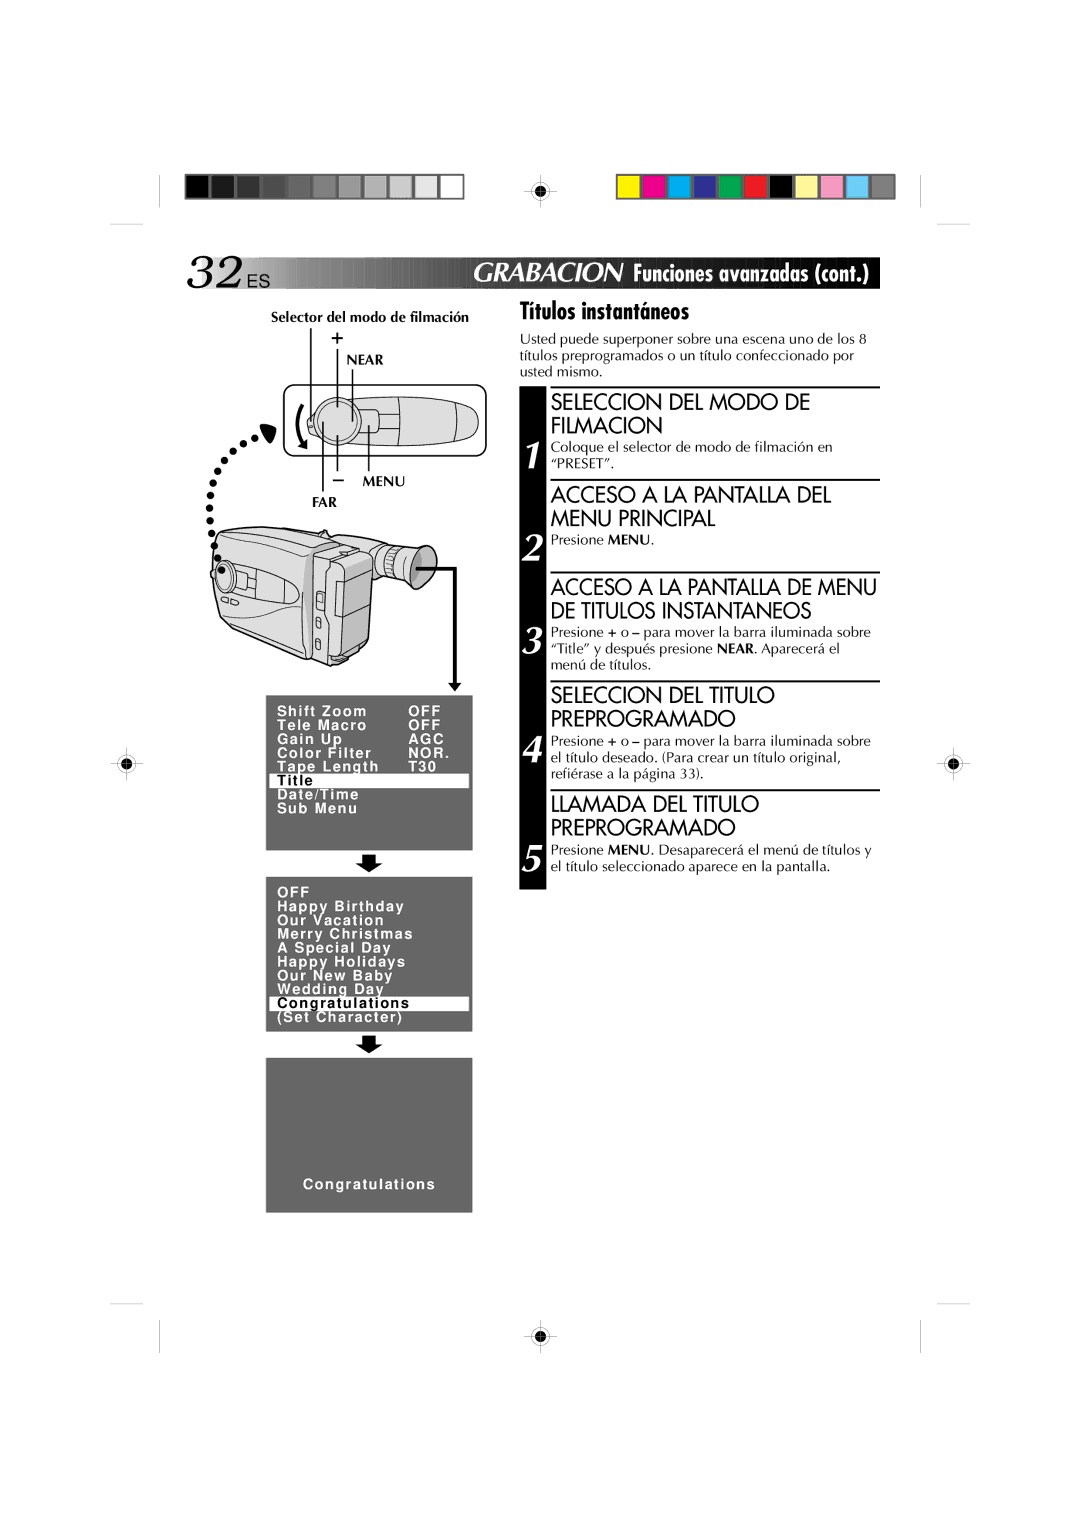 JVC GR-AX1027 manual Títulos instantáneos, Seleccion DEL Titulo Preprogramado, Llamada DEL Titulo Preprogramado 